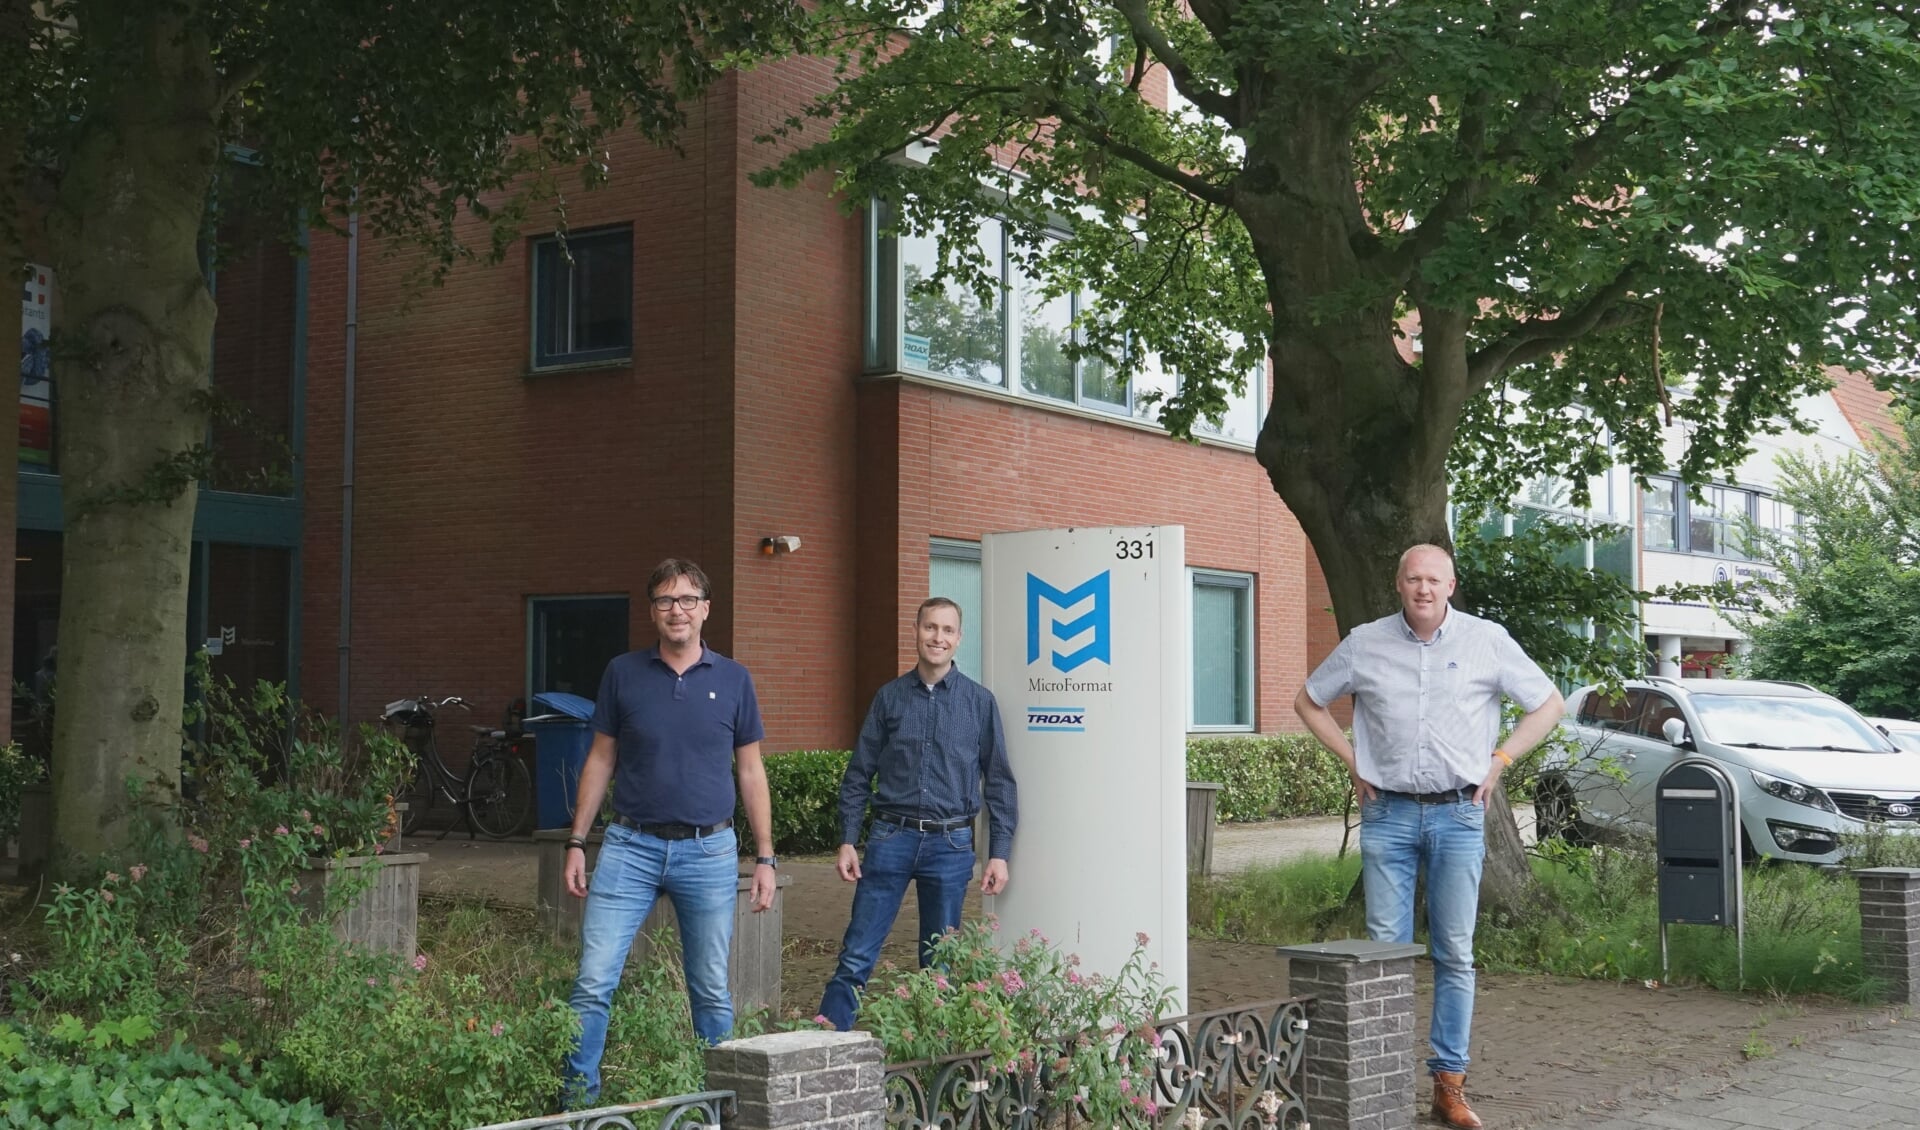 Emanuel van der Wiel, Joost Barda en Pascal Gabler zijn de nieuwe eigenaren van het Microformat-pand. Zij gaan er een bedrijfsverzamelpand van maken.